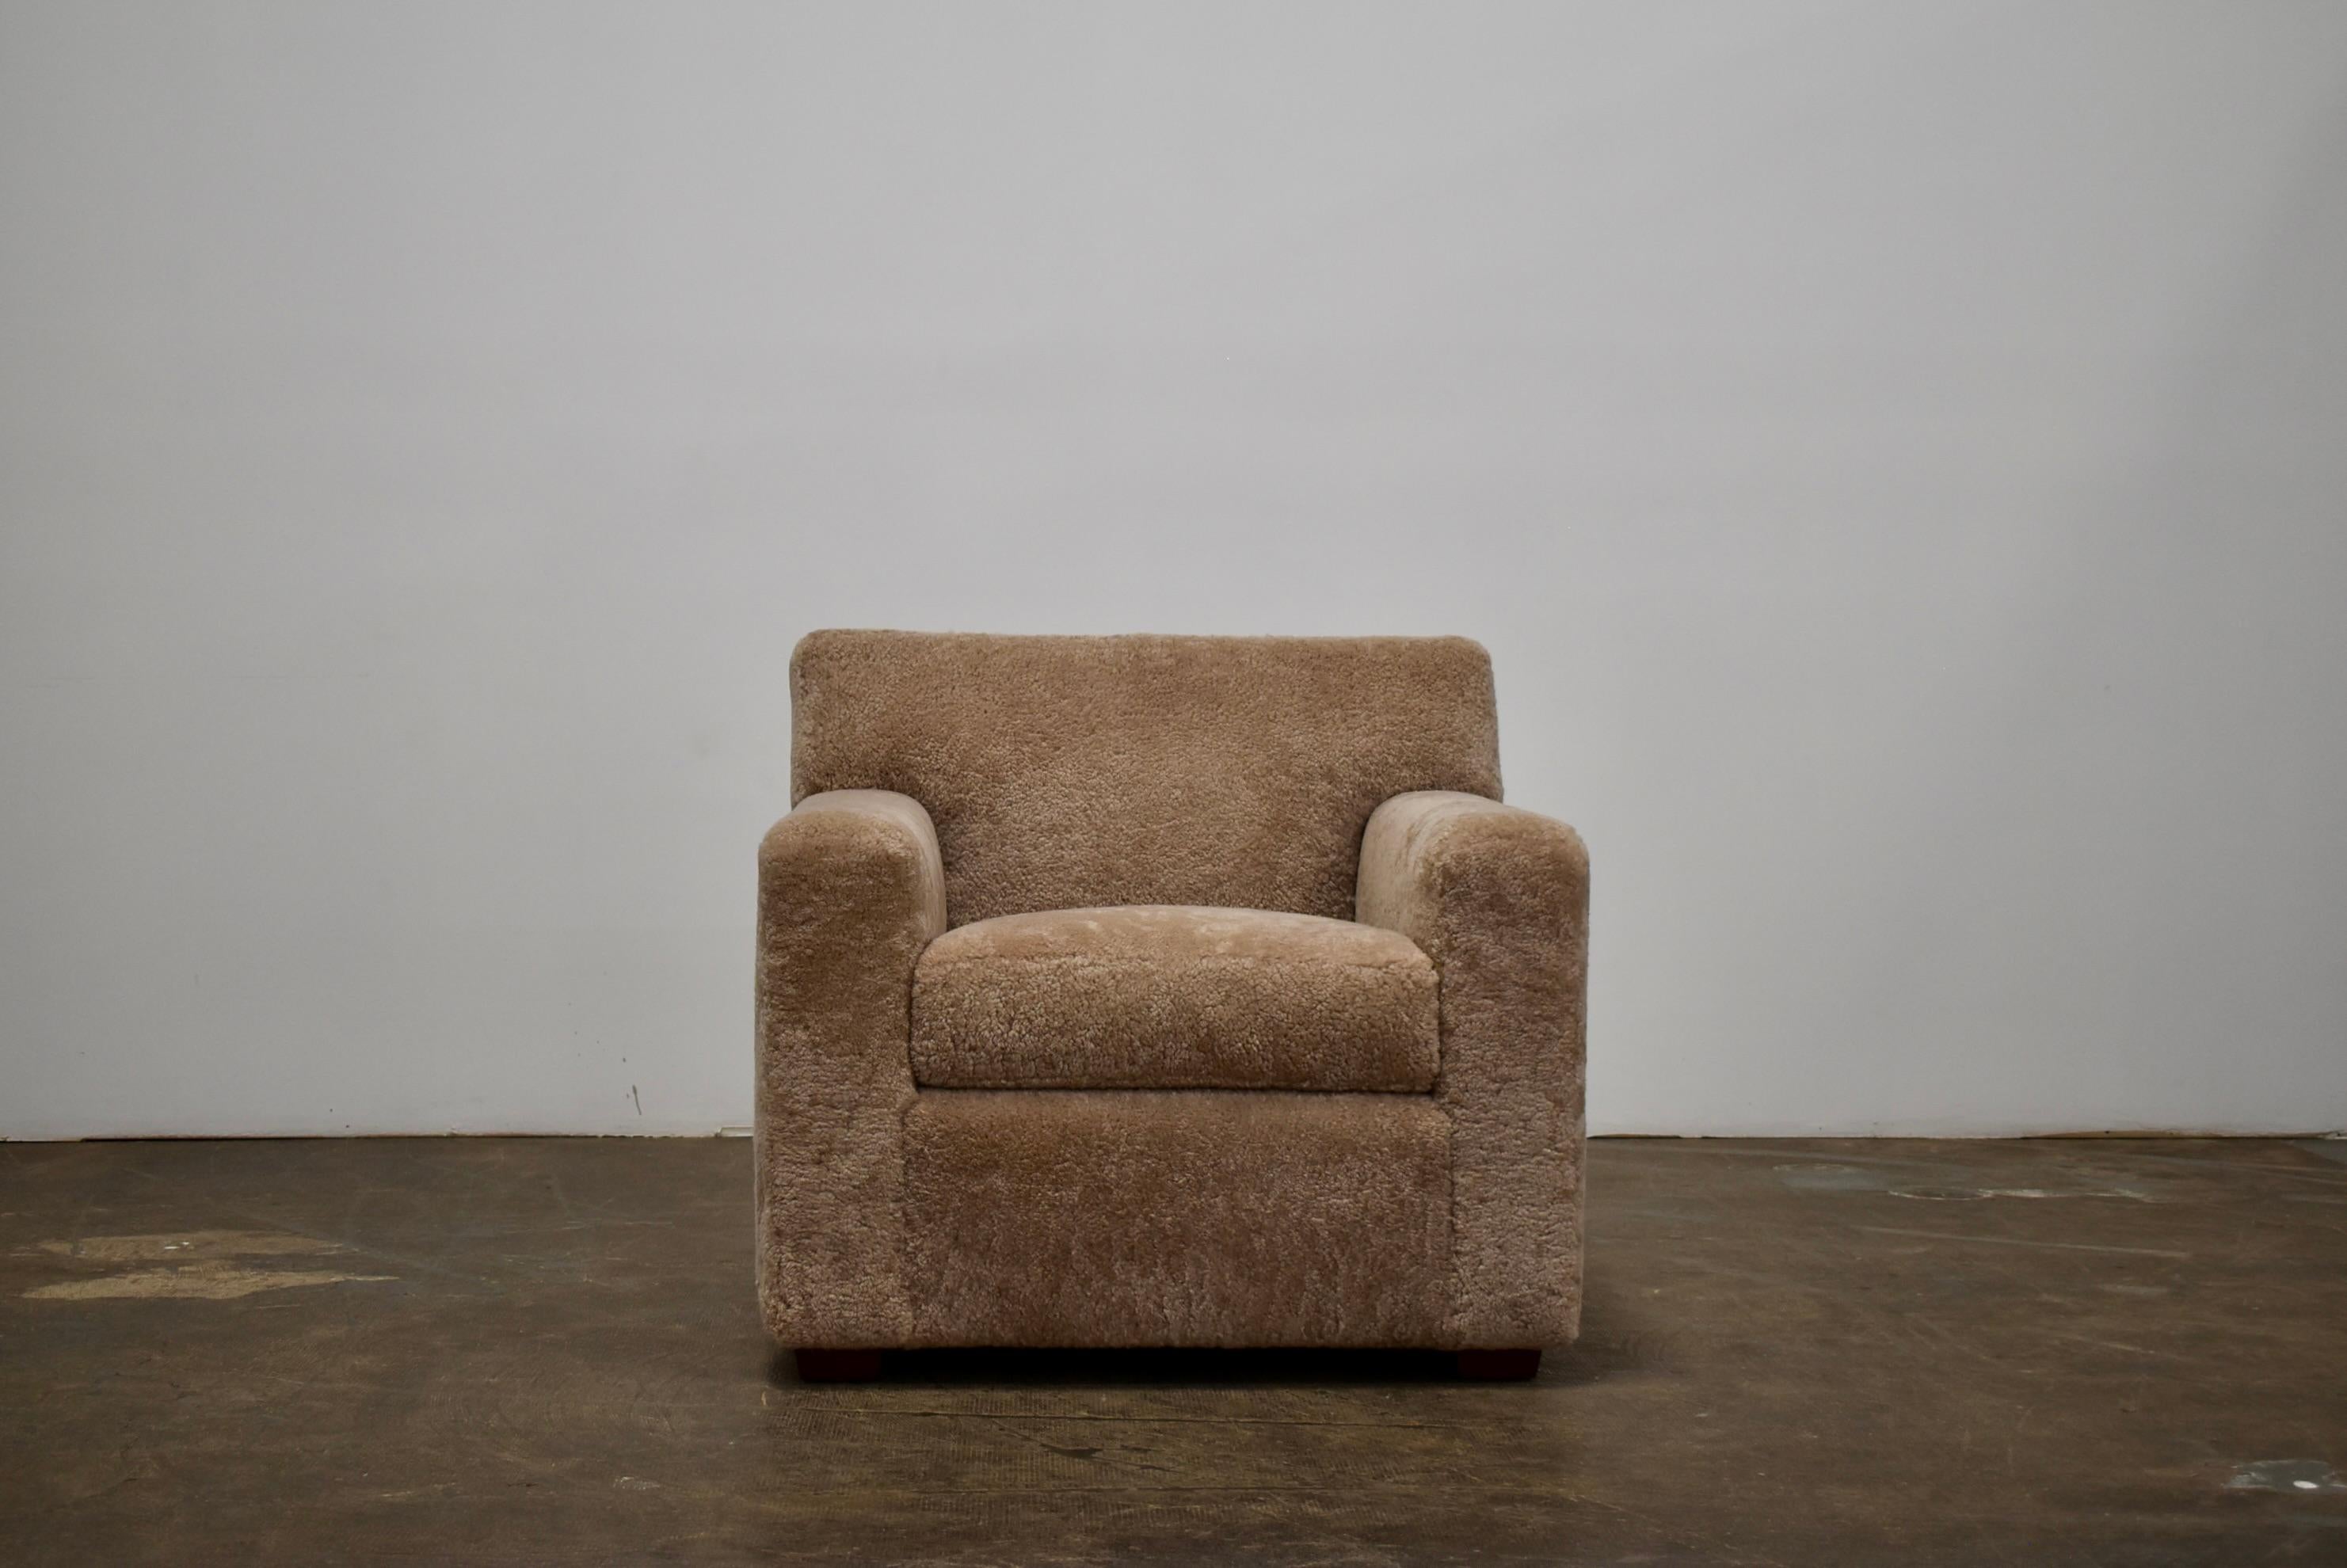 Unser JMF-Club-Sessel ist perfekt für jeden modernen oder klassischen Raum. Es ist klassisch handgefertigt, wie das von Jean Michel Frank entworfene Original, aber mit einigen modernen Techniken. Der innere Rahmen ist aus massivem Hartholz